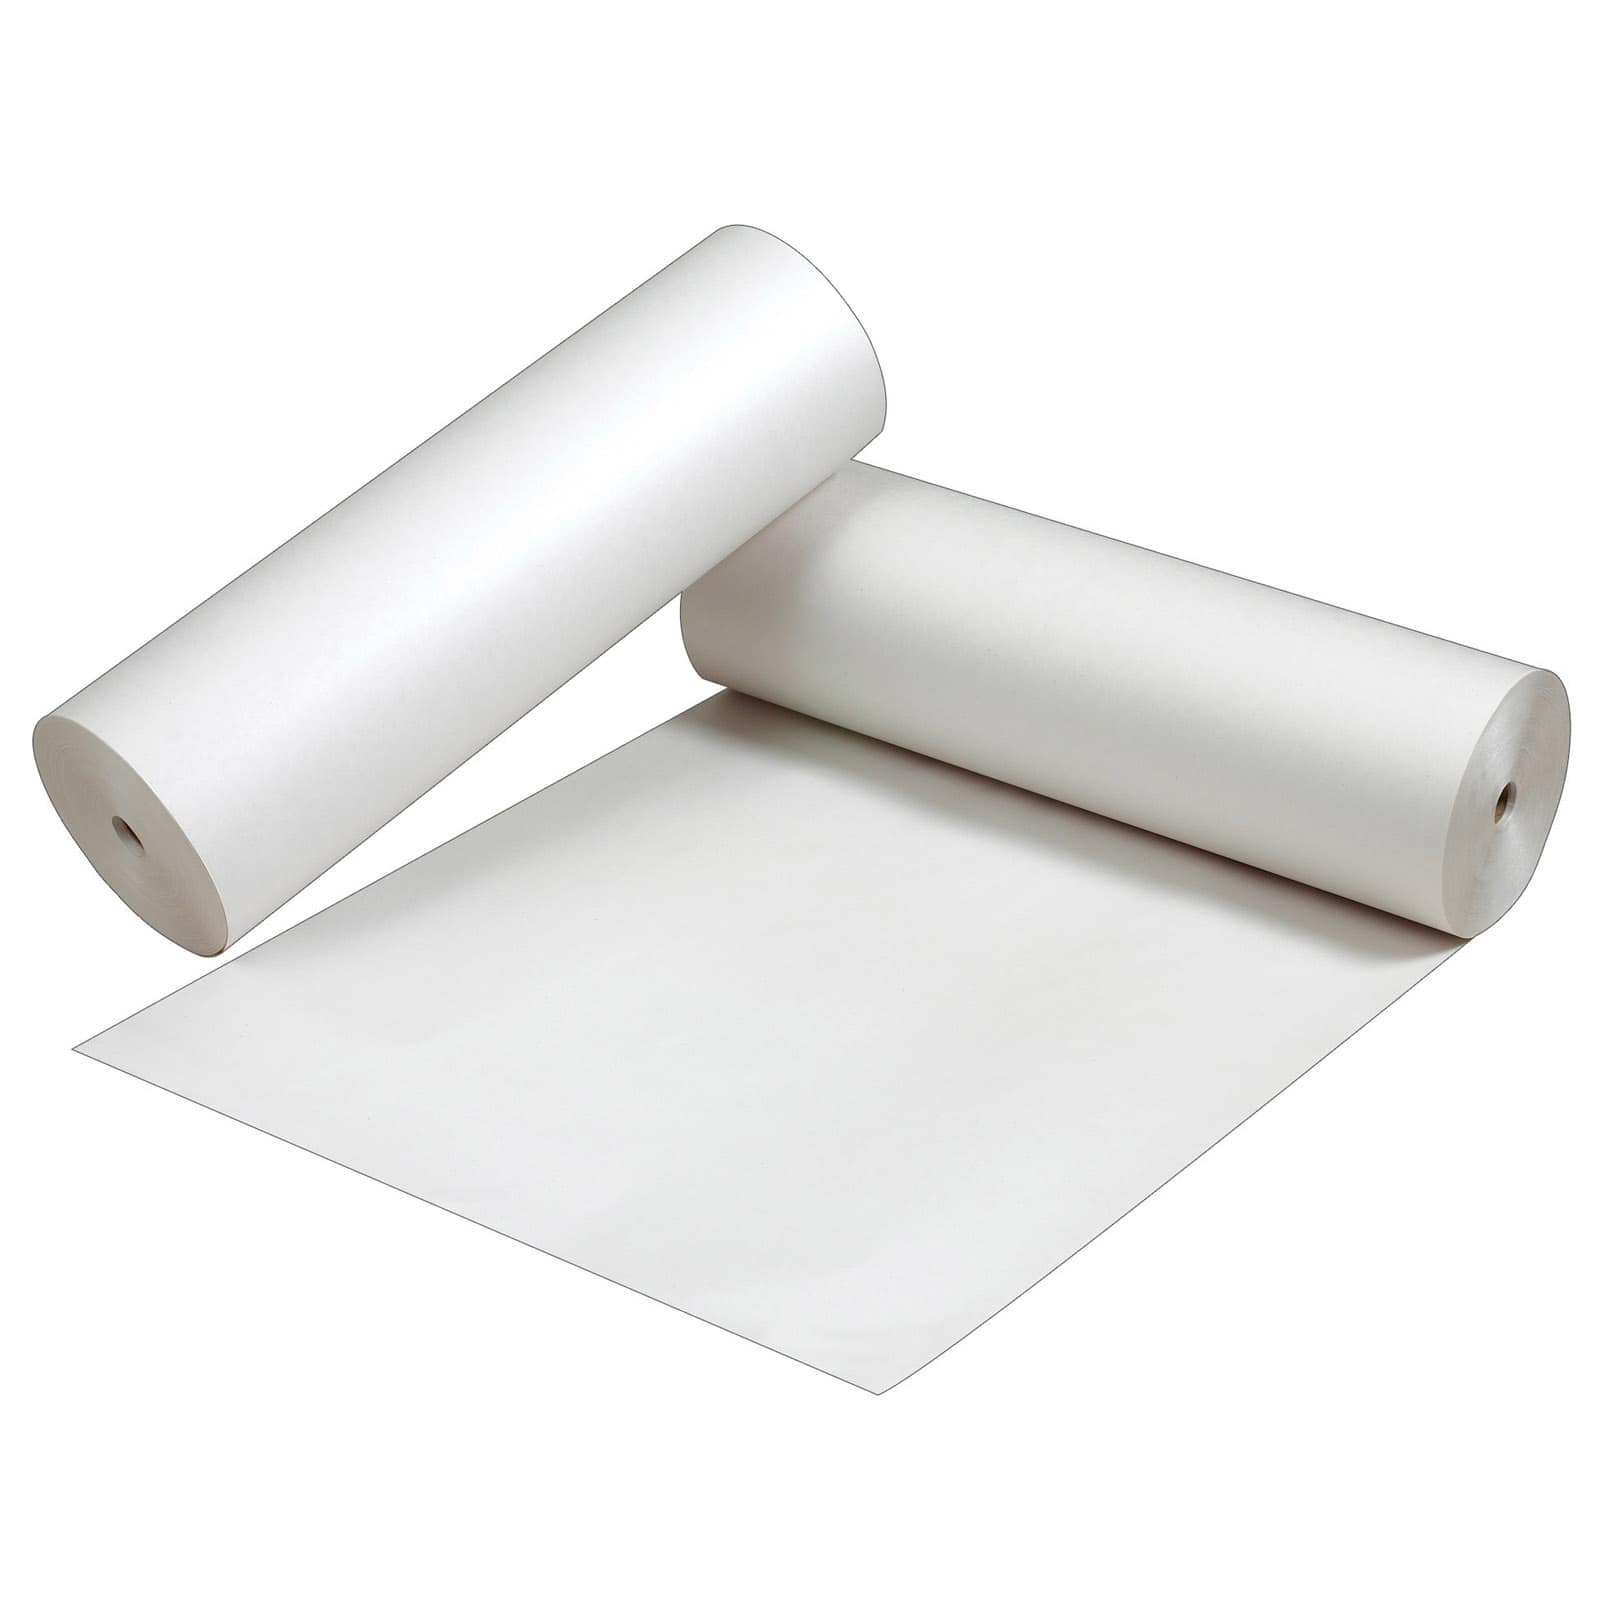 Pacon® Newsprint Paper Roll